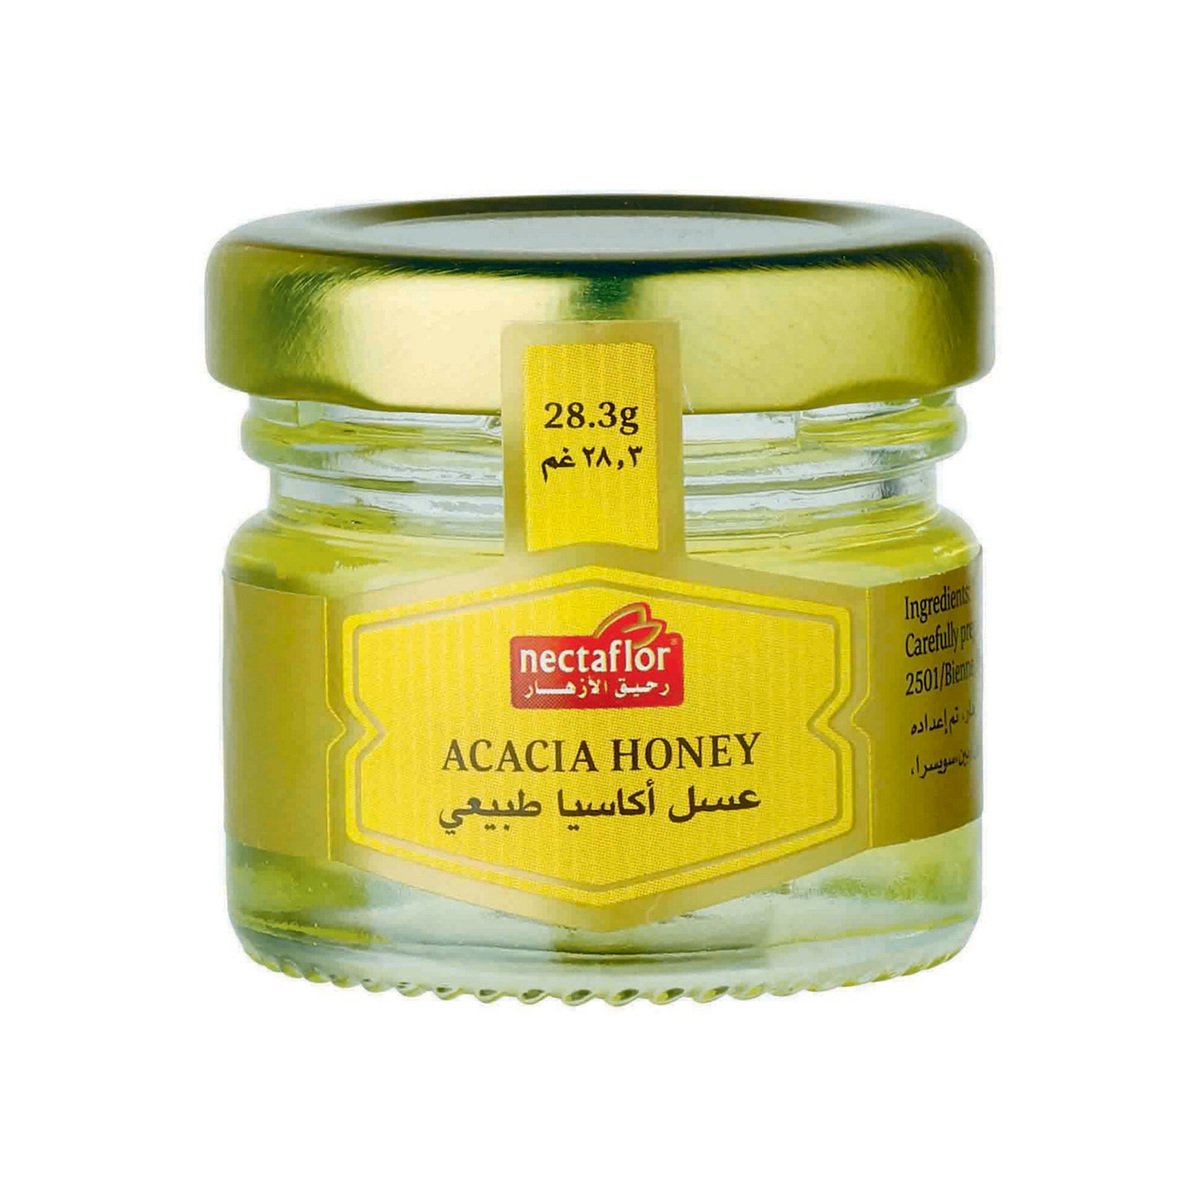 Nectaflor Acacia Honey 28.3 g